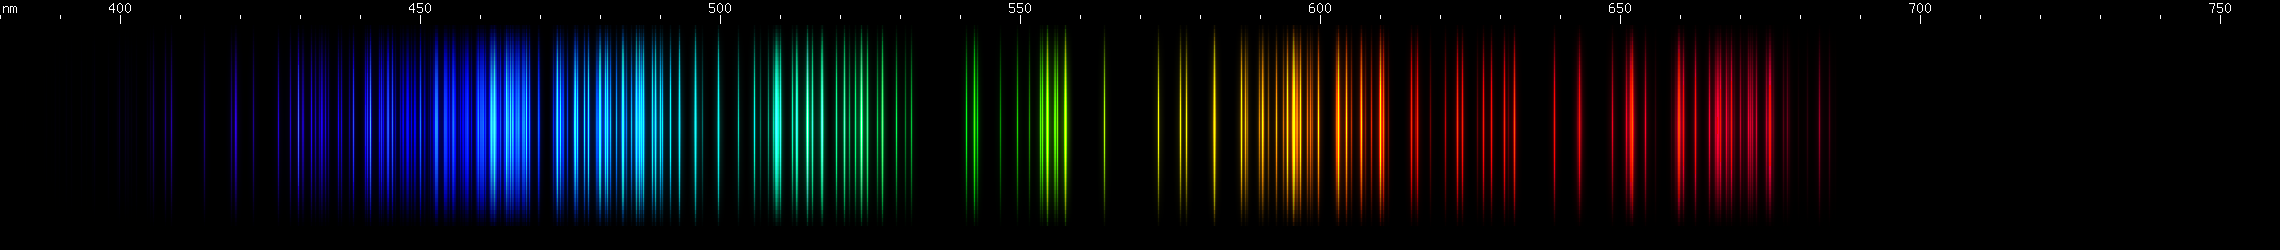 Spectral lines of Promethium.